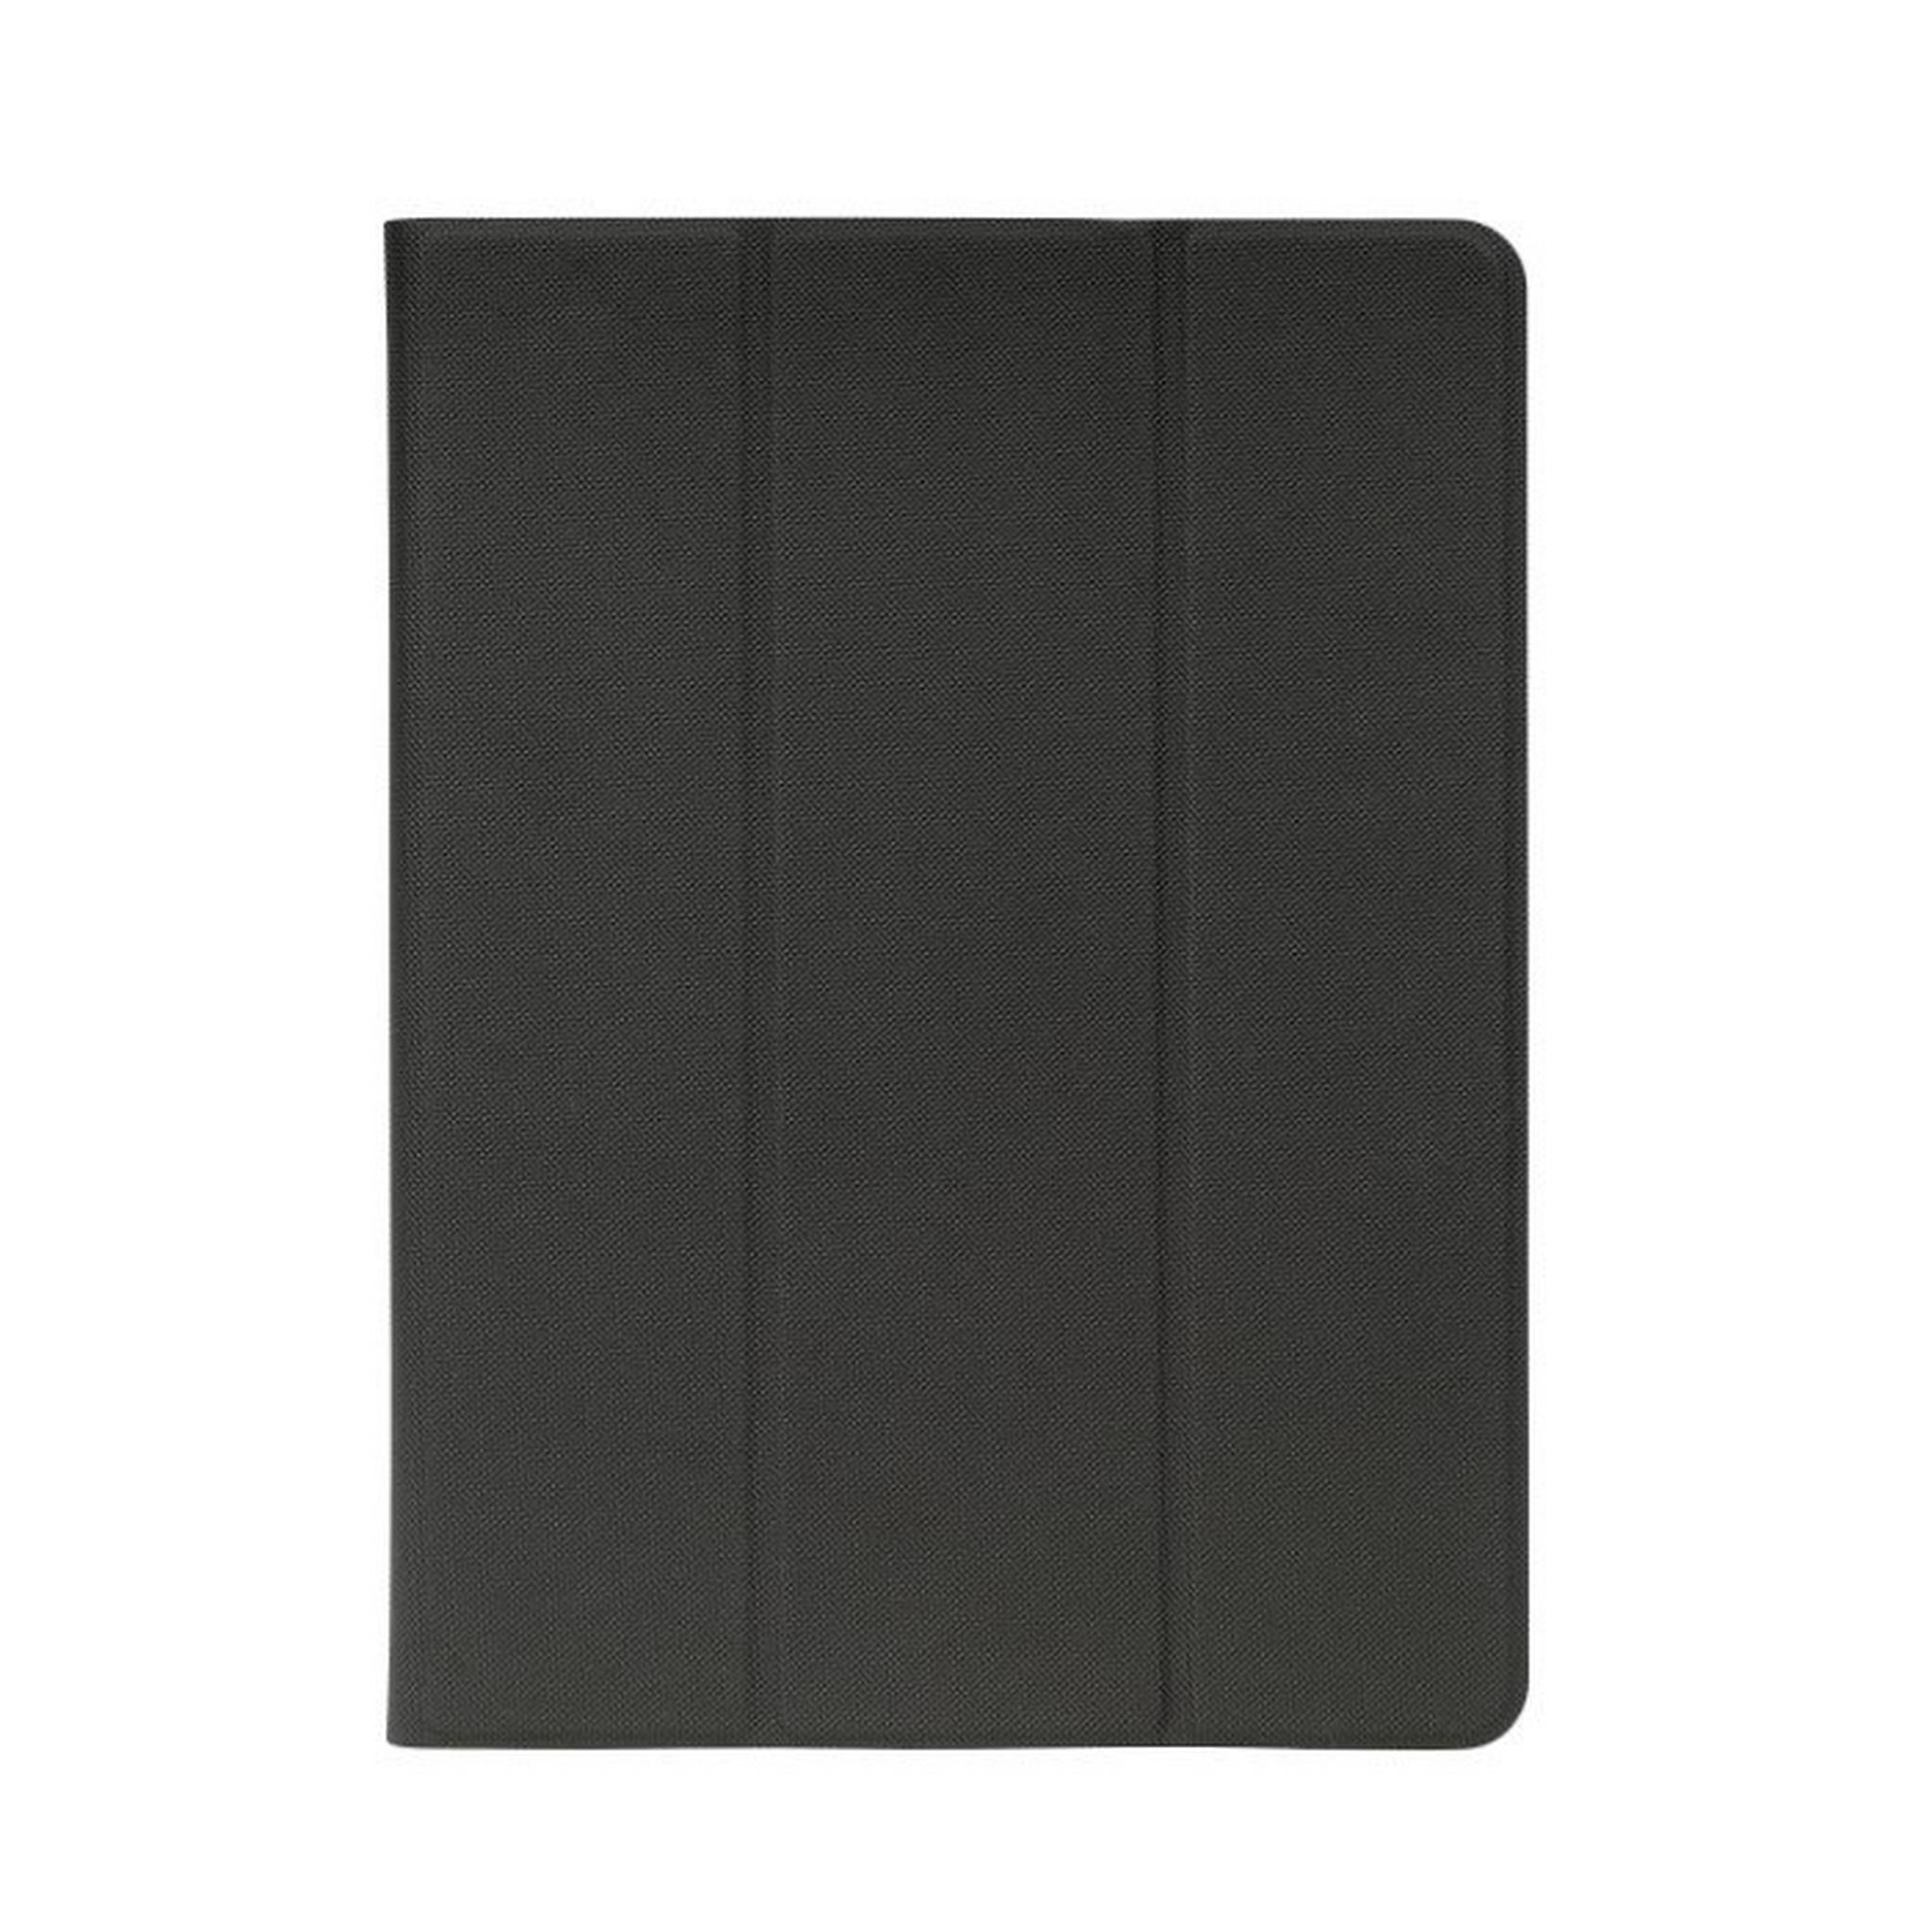 Tucano Up Plus Folio Case for iPad 10.2" and iPad Air 10,5", IPD102UPP-BK – Black